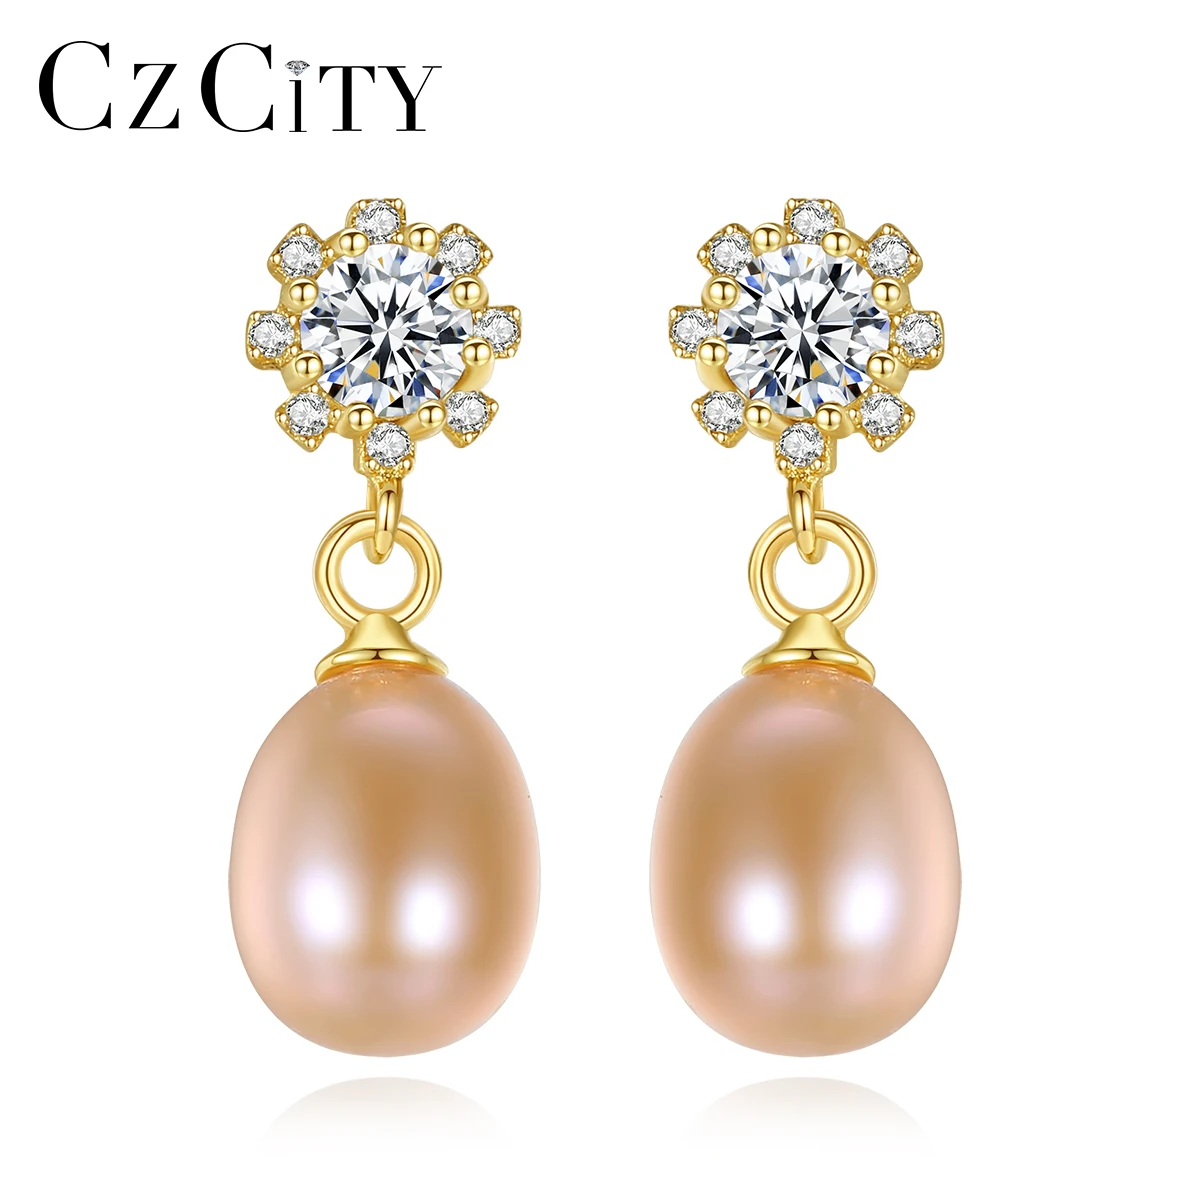 

CZCITY Charm Pearl Stud Earrings with AAA Cubic Zircon 925 Sterling Silver Earrings for Women Wedding Fine jewelry Gifts FE0310